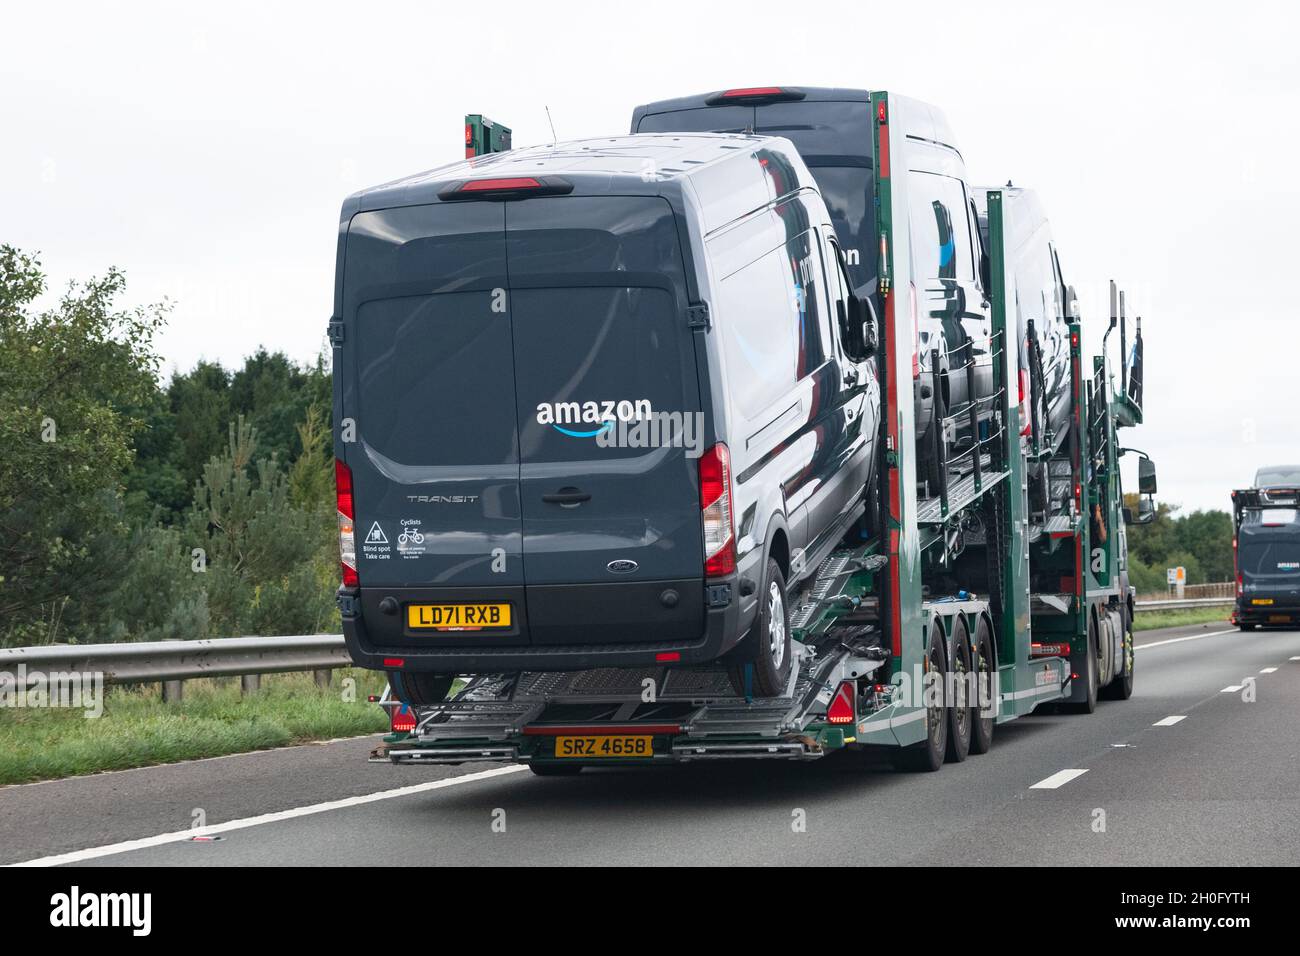 Neue Amazon ford Transporter auf Lieferwagen - Großbritannien  Stockfotografie - Alamy